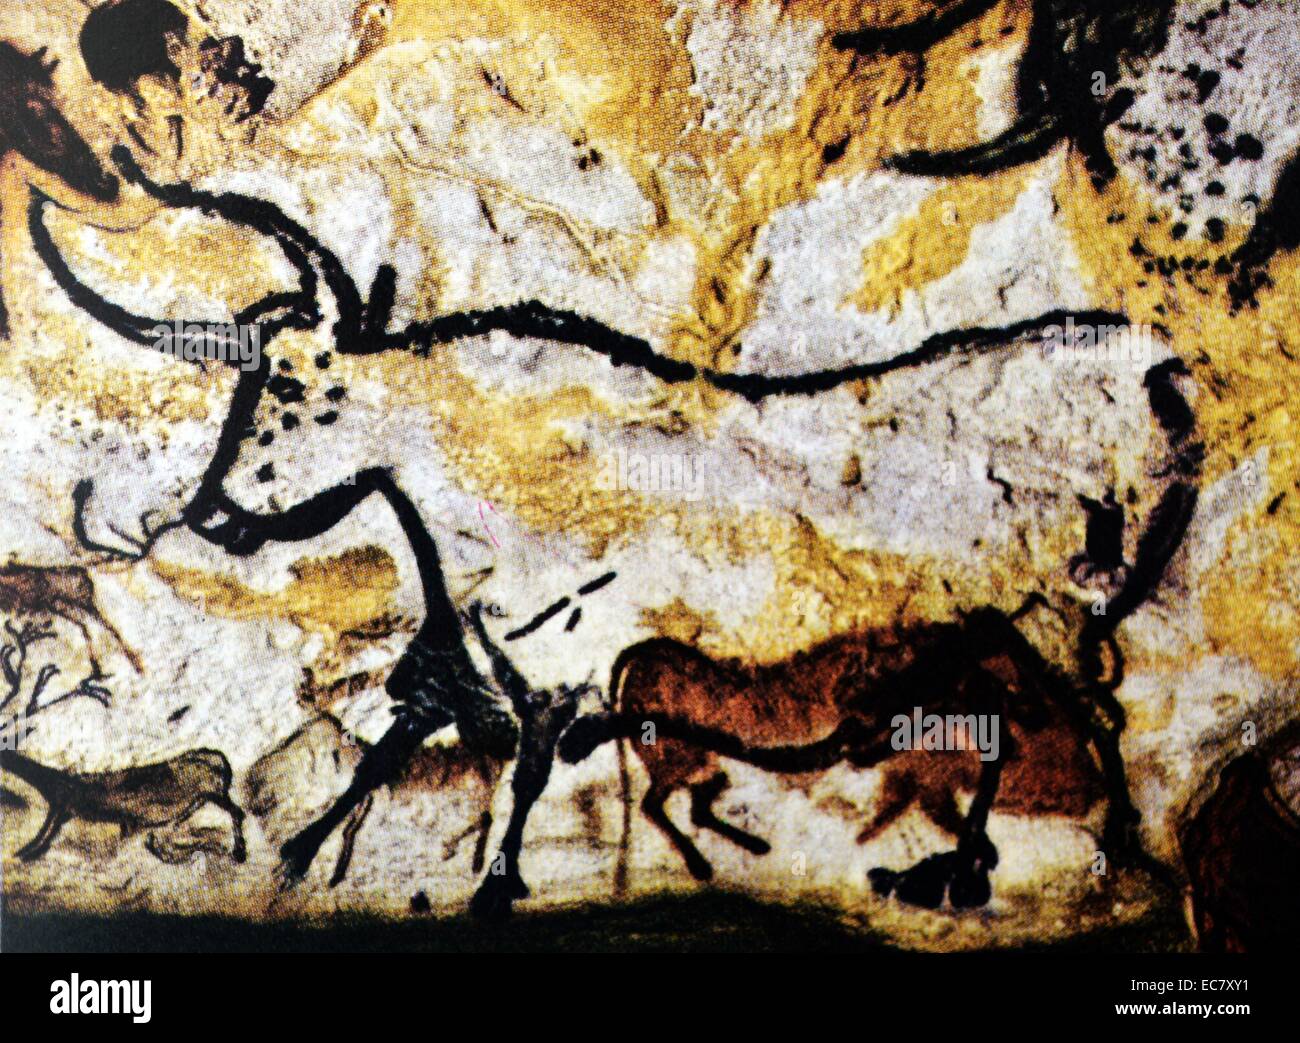 Bullen und Rinder. Detail einer Höhlenmalerei. Franco-Cantabrian, oberen Altsteinzeit, 15,000-10.000 v. Chr.. Linke Wand der Rotunde in der Grotte von Lascaux (Dordogne (, Frankreich. Die großen Bullen nach links weist, wird im Schwarzen umrissen, mit Hörnern in der doppelten Perspektive. Es war im Vergleich zu früheren Gemälde von zwei rötlich-braunen wilde Rinder, Brei in der Größe kleiner gezeichnet. Stockfoto